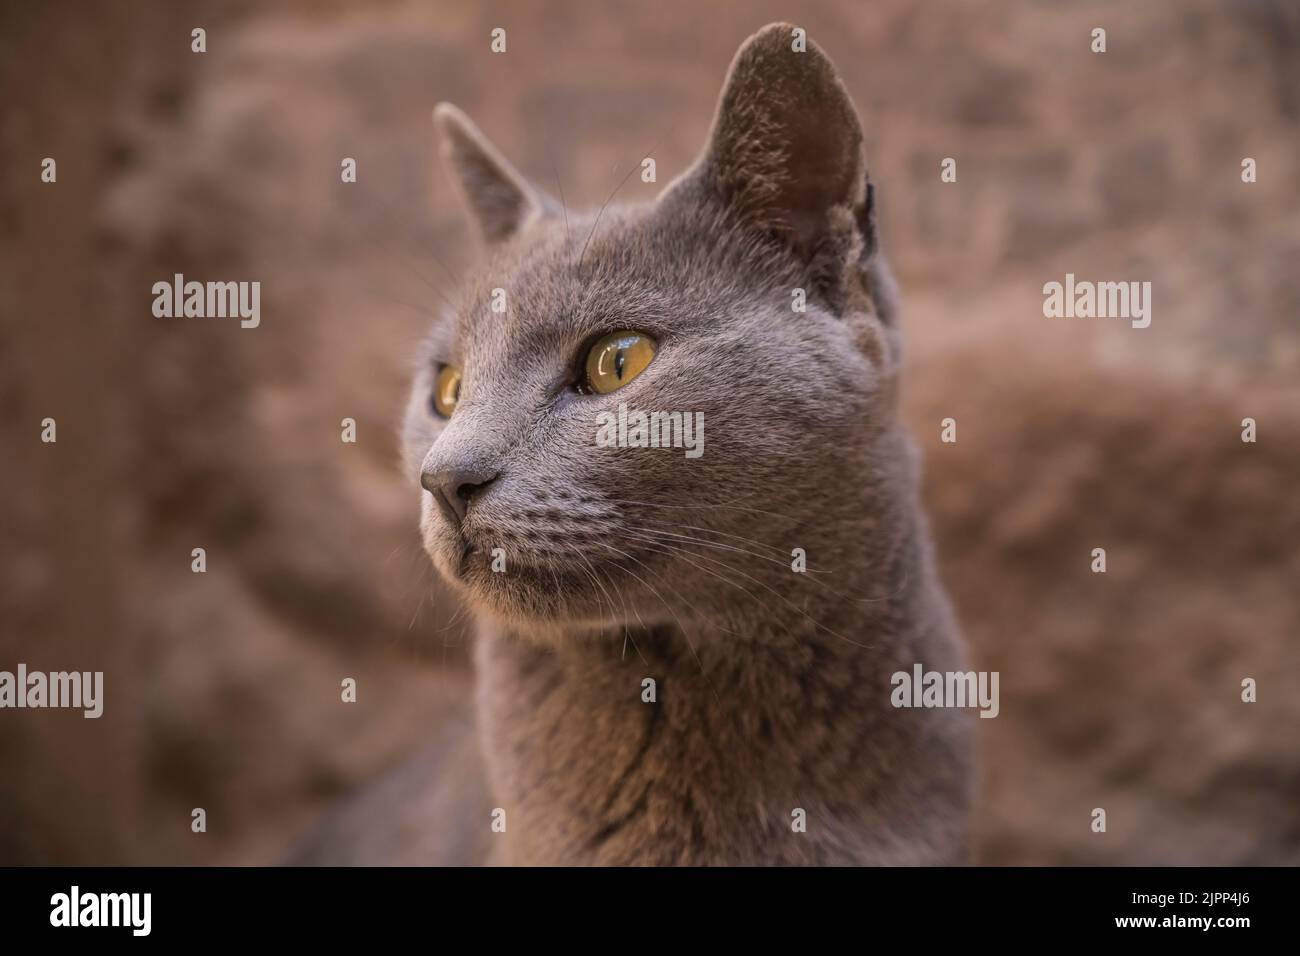 Katze in der Tempelanlage Philae, Assuan, Ägypten Stock Photo